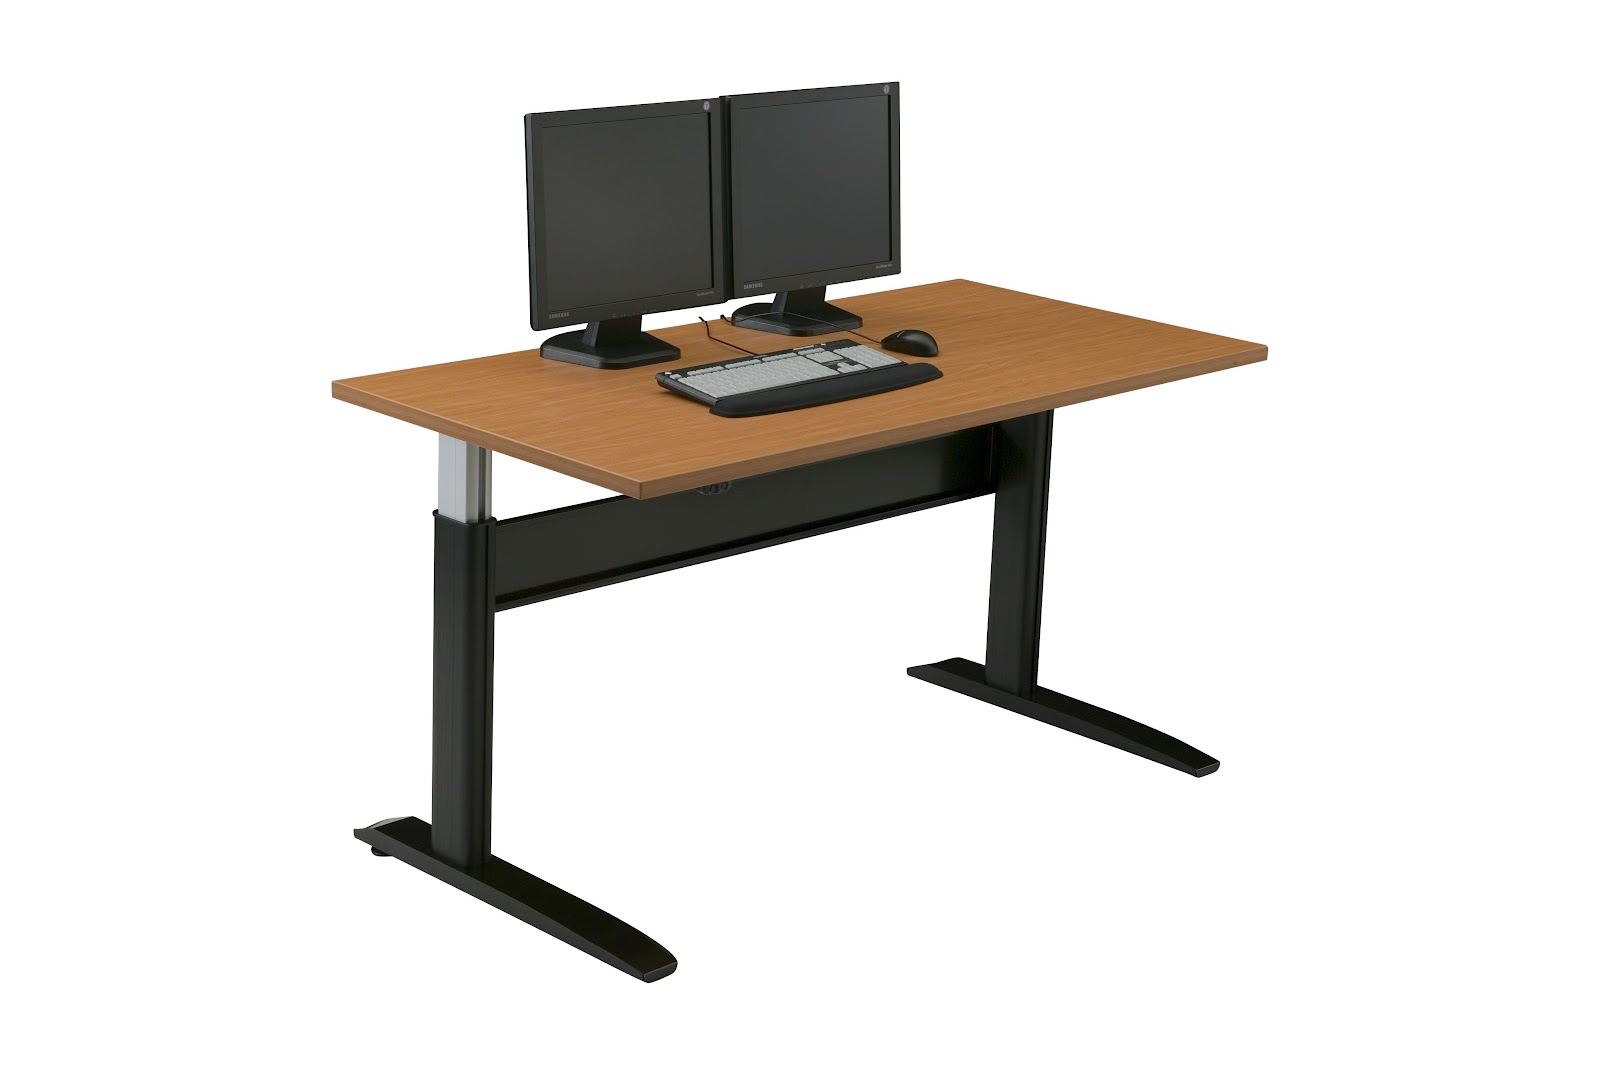 Adjustable Laptop Desk Computer Table Office Furniture